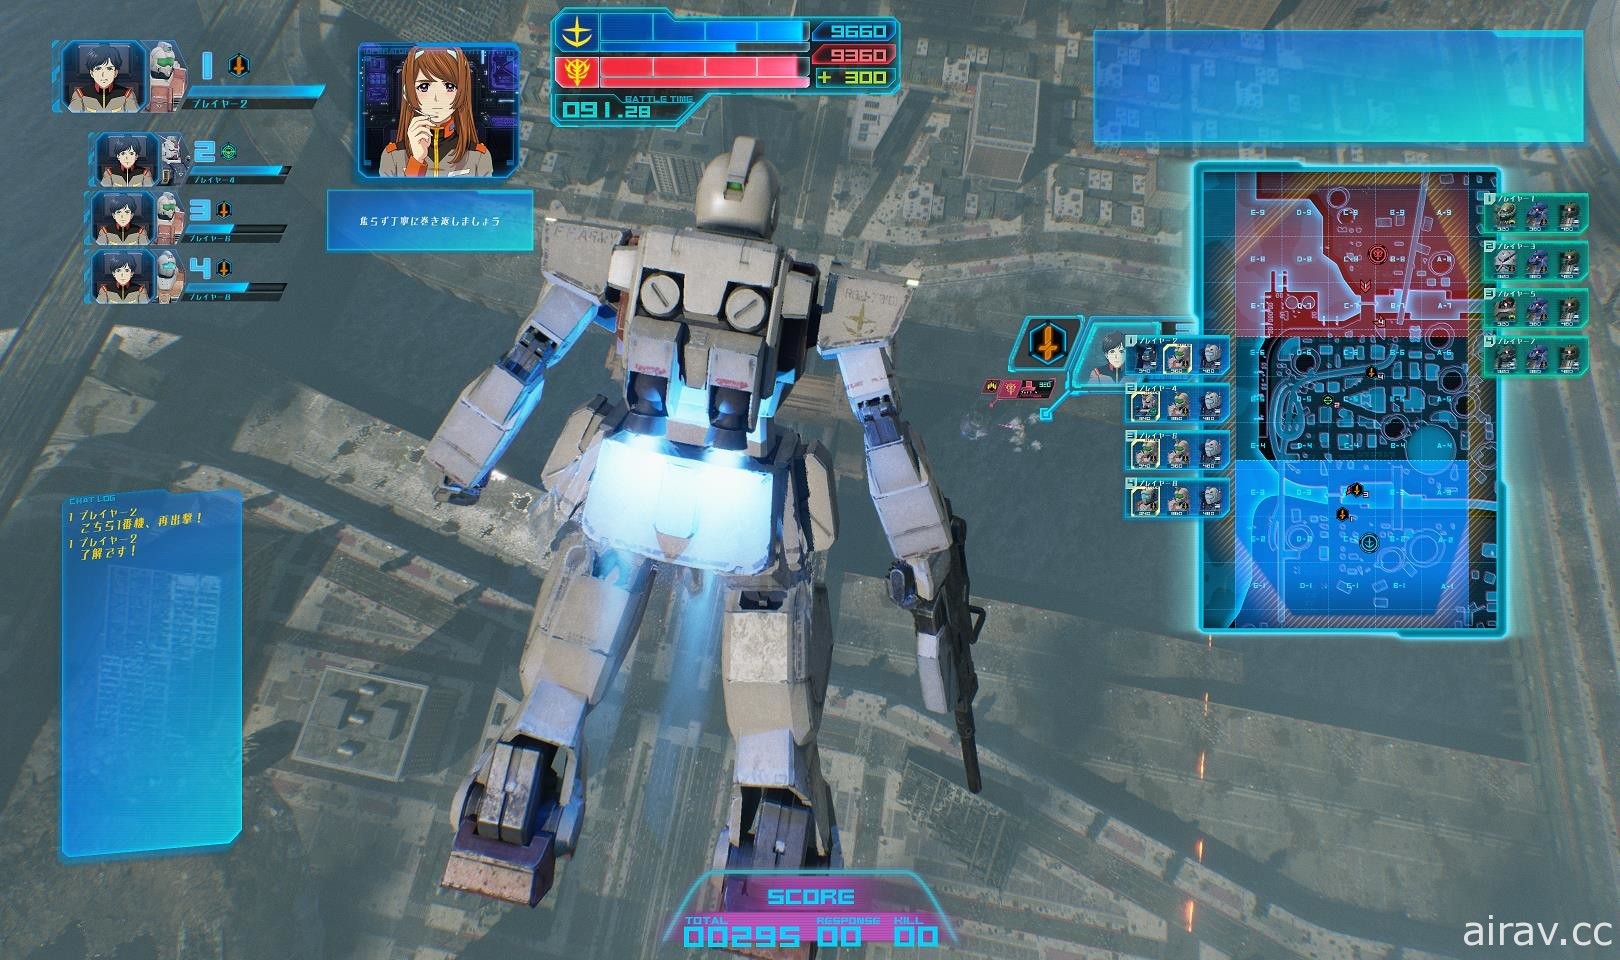 《機動戰士鋼彈 戰場之絆 II》正式推出營運 以三螢幕駕駛艙體驗逼真 MS 戰鬥臨場感